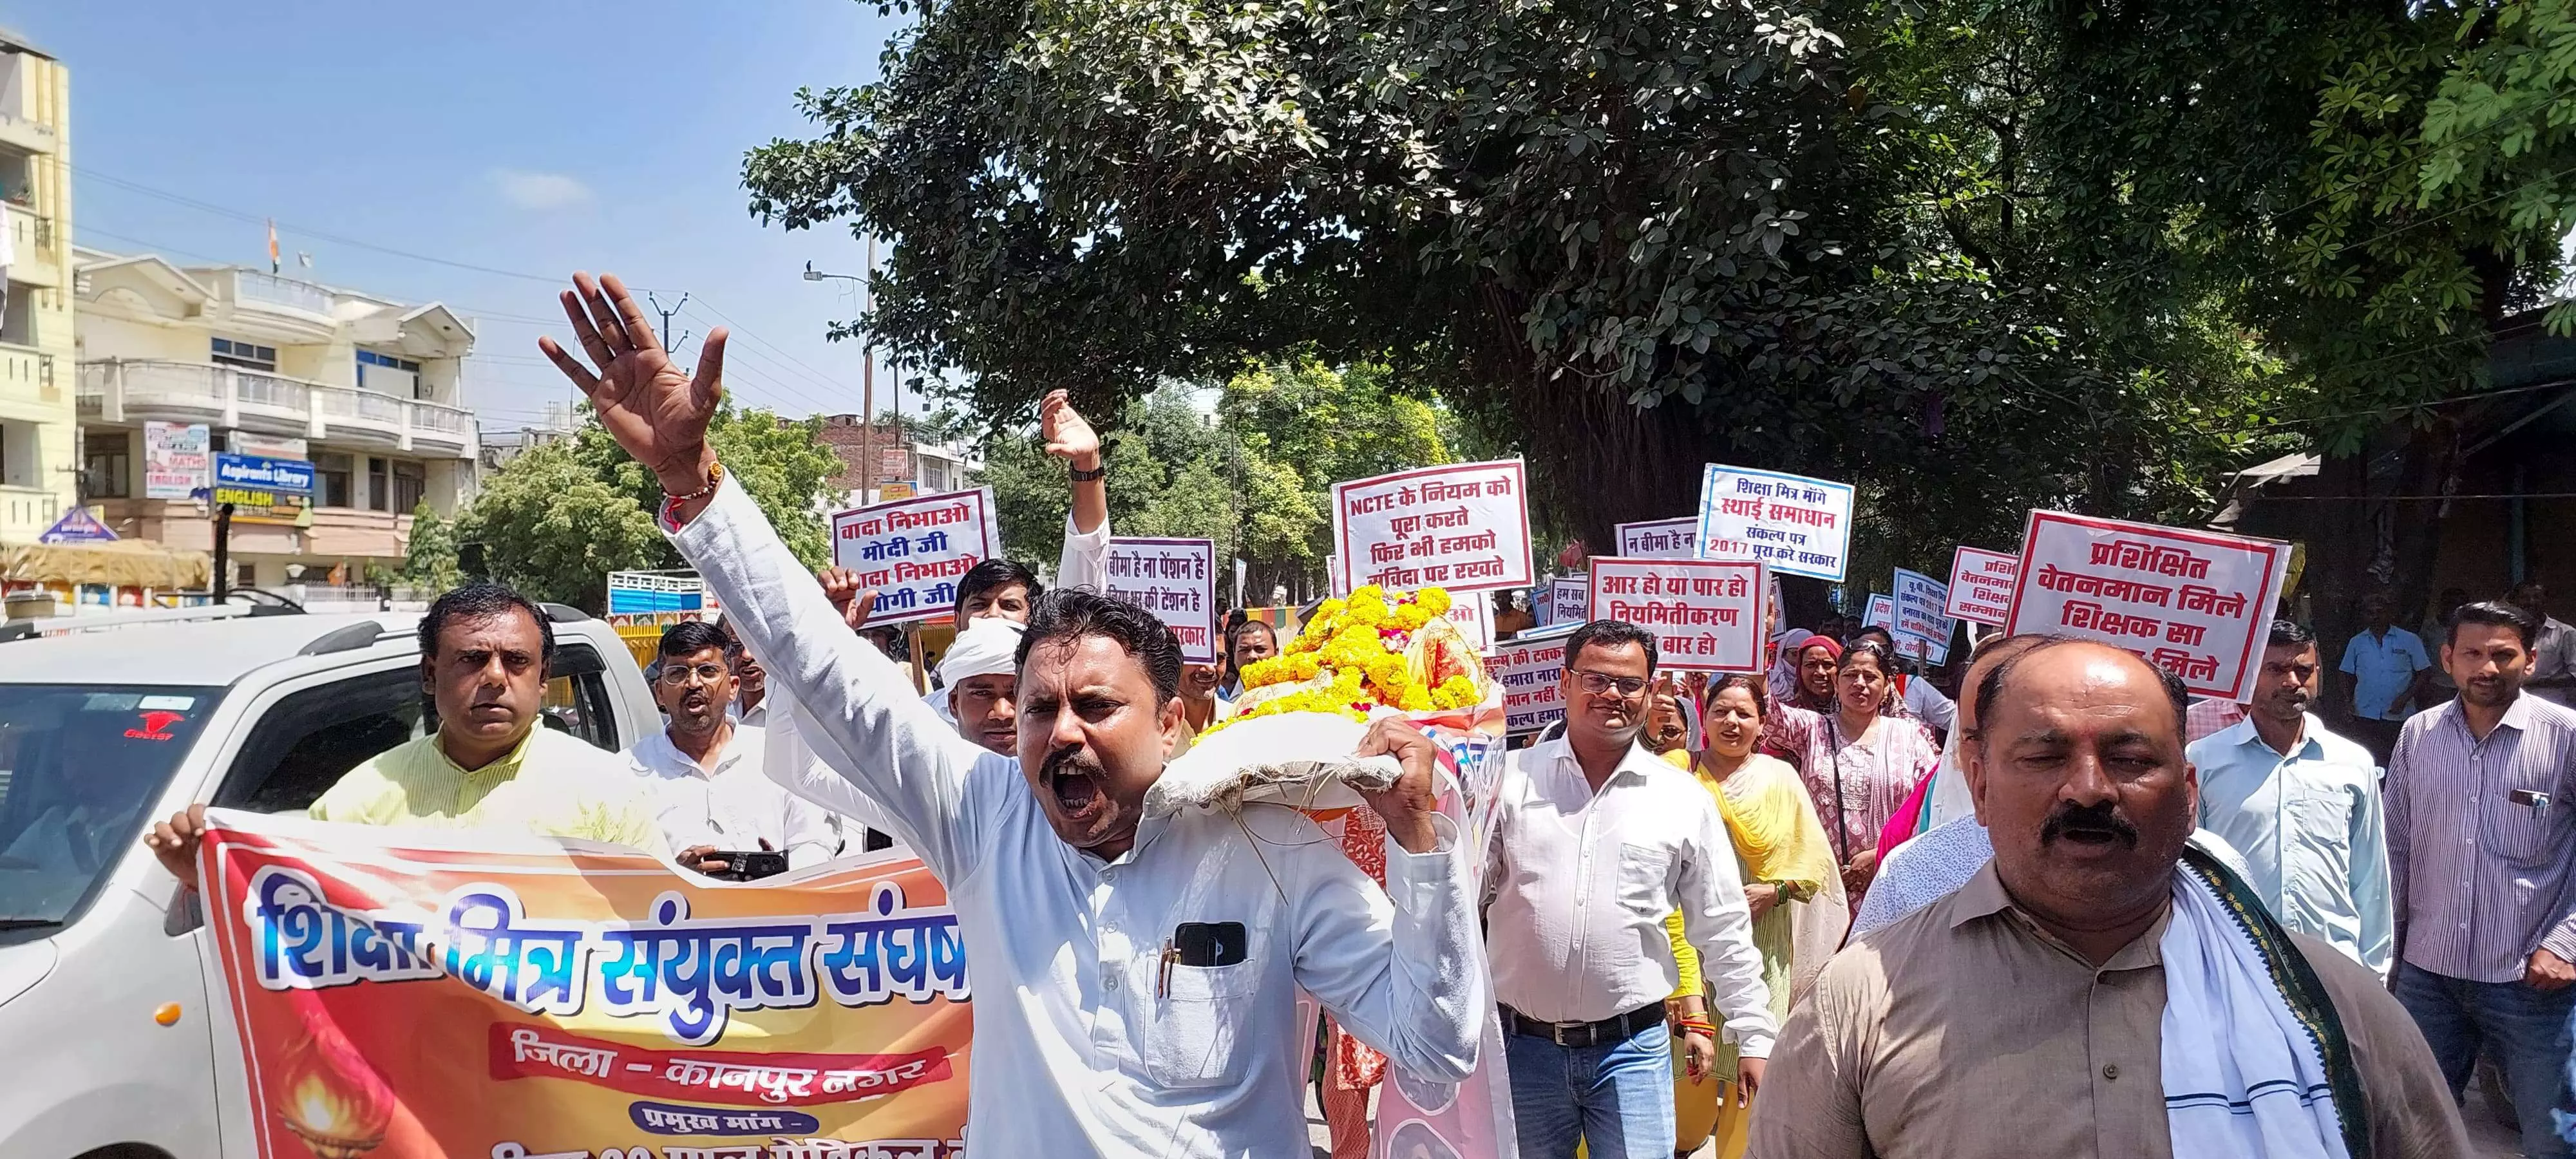 कानपुर के शिक्षा मित्रों ने सांसद के आवास की ओर किया कूंच, जाकर सांसद देवेंद्र सिंह भोले को मांगपत्र सौंपा